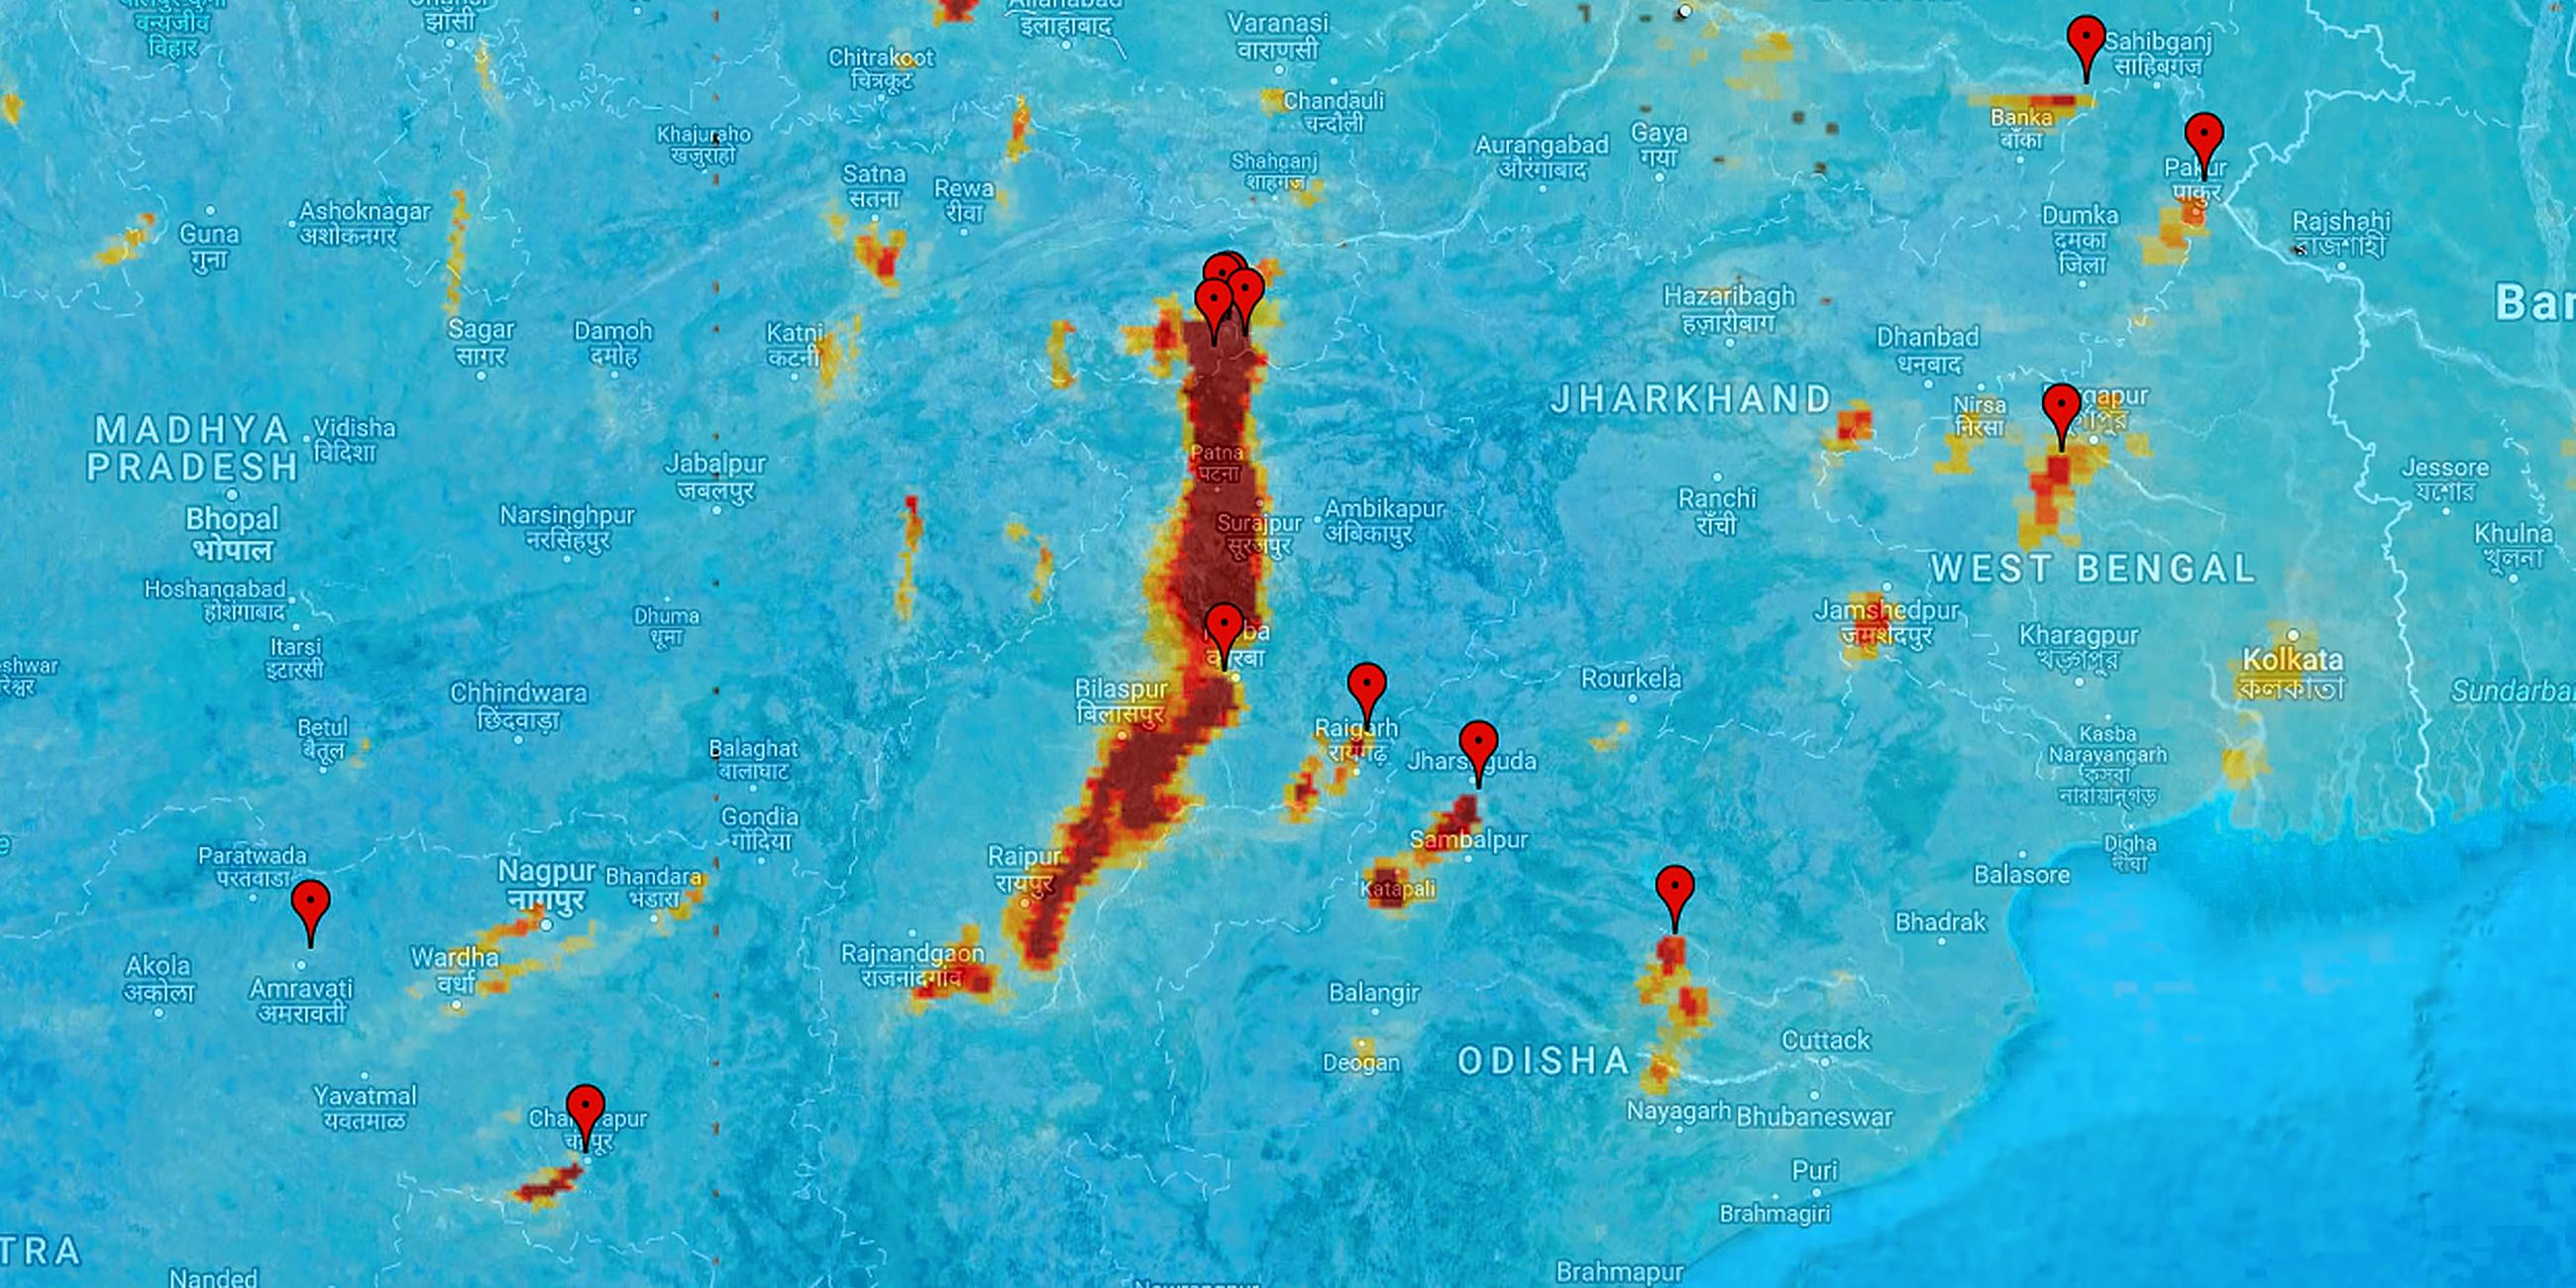 Archiv: Eine Aufnahme vom Umweltsatelliten Sentinel-5P zeigt Luftverschmutzung durch Kraftwerke in Indien, aufgenommen am 27.11.2017